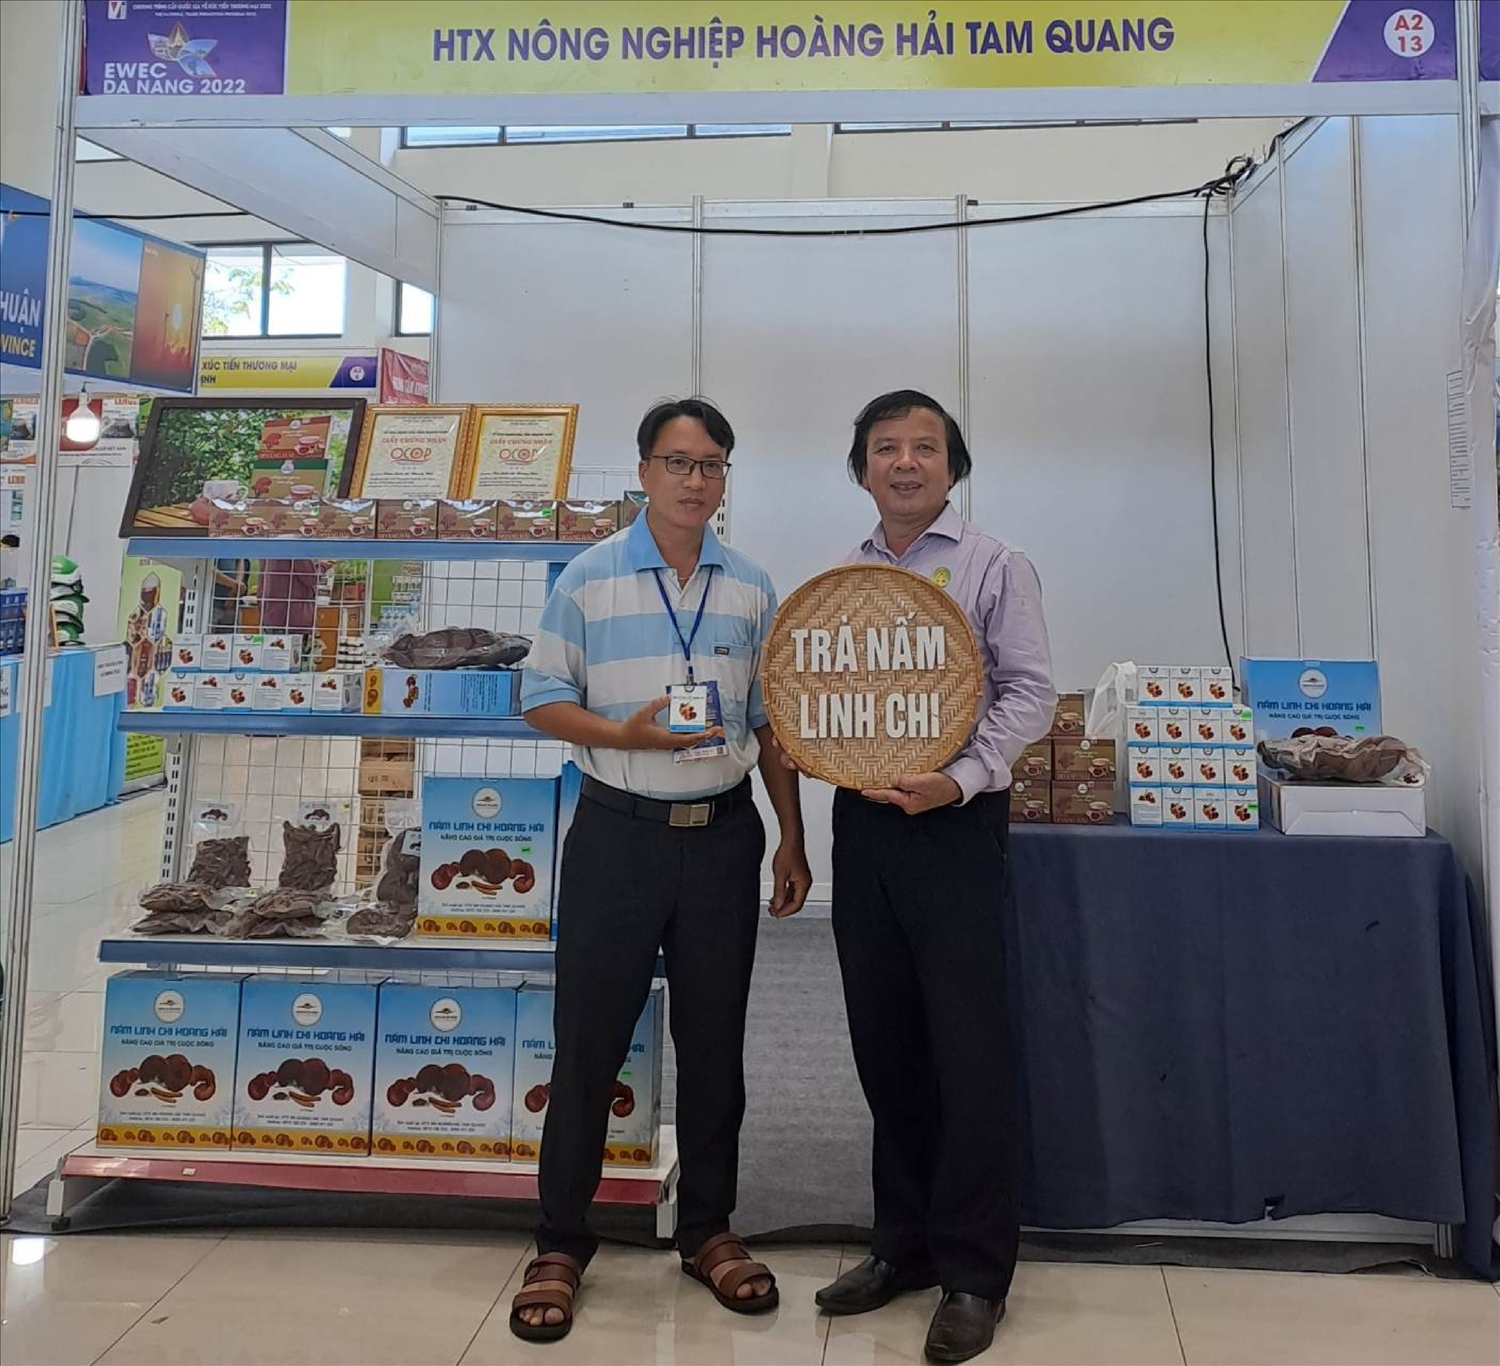 Giám đốc HTX Nông nghiệp Hoàng Hải Tam Quang -Nguyễn Thanh Vũ (bên trái) cùng gian hàng với các sản phẩm OCOP của HTX.